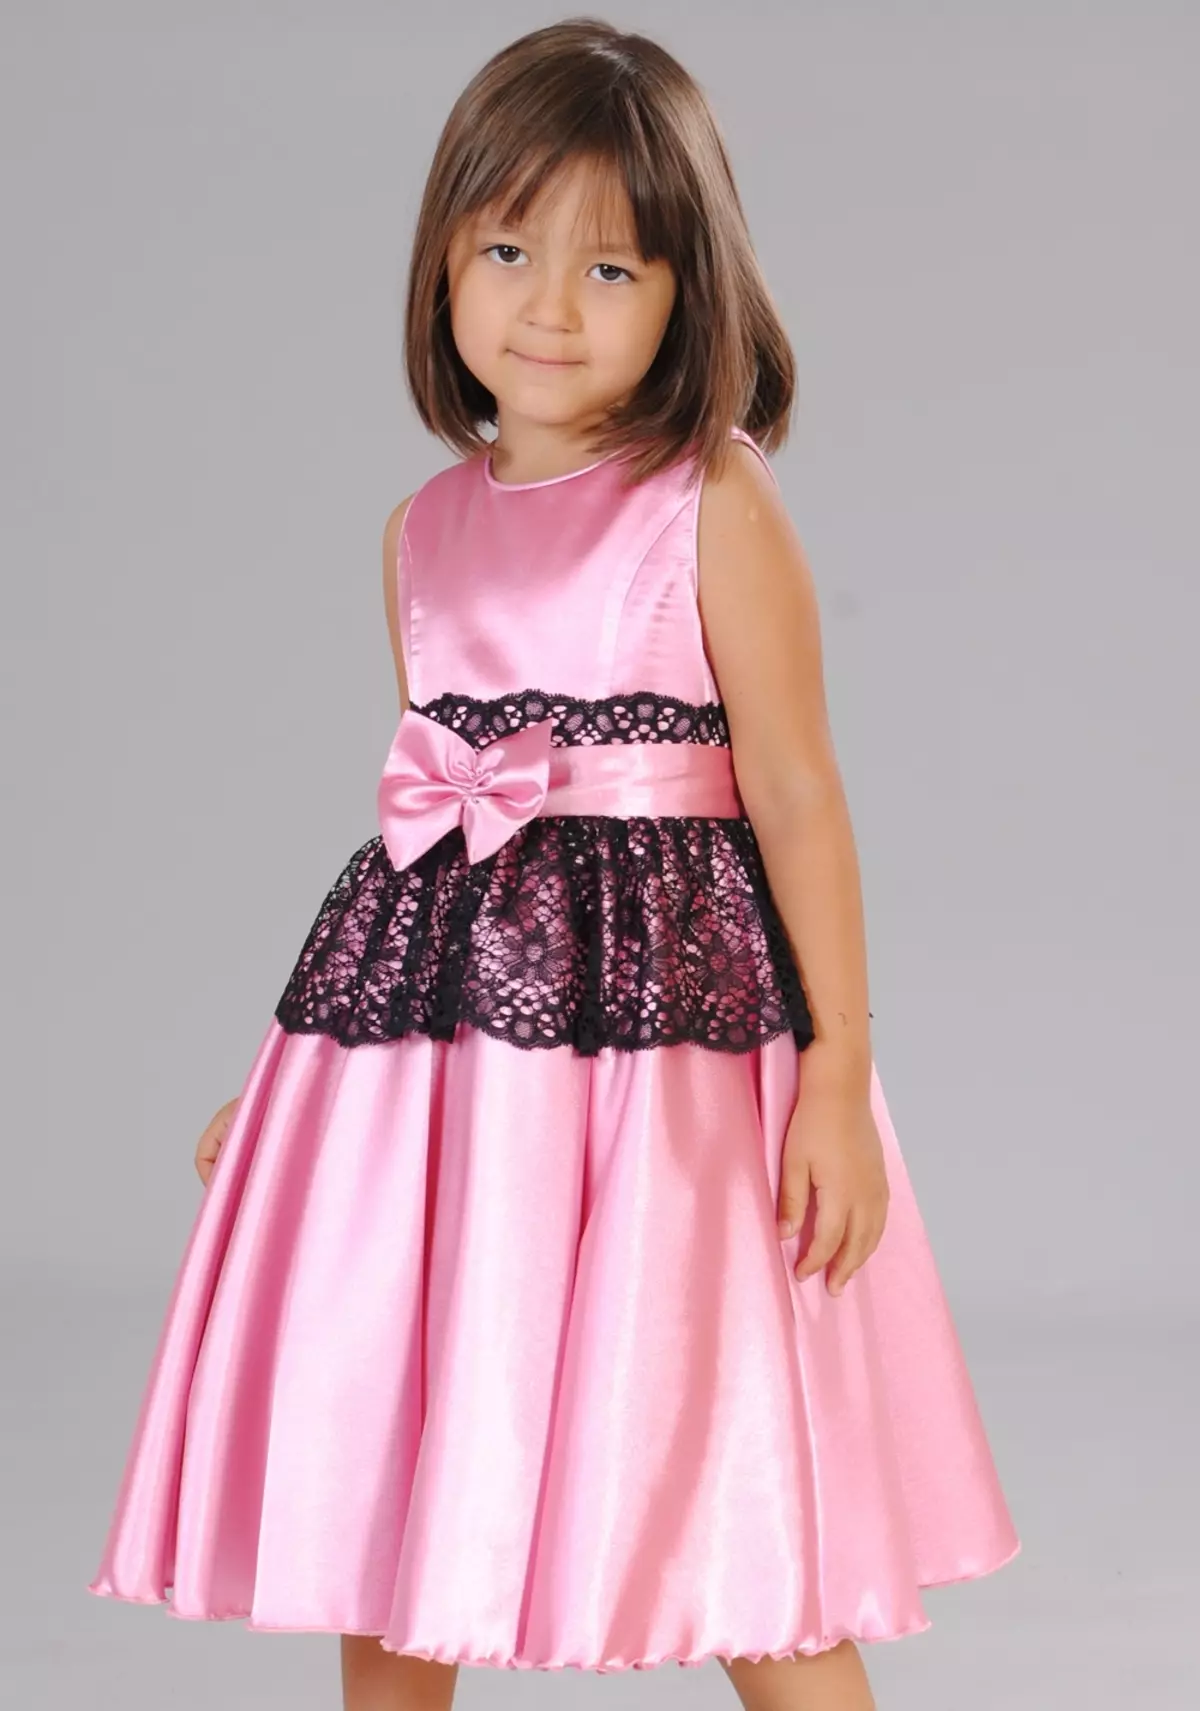 Cutie Susie (52 foto): uniforme scolastica, abiti, costumi e altri indumenti per bambini per ragazze 7 anni, recensioni di prodotti 3792_34